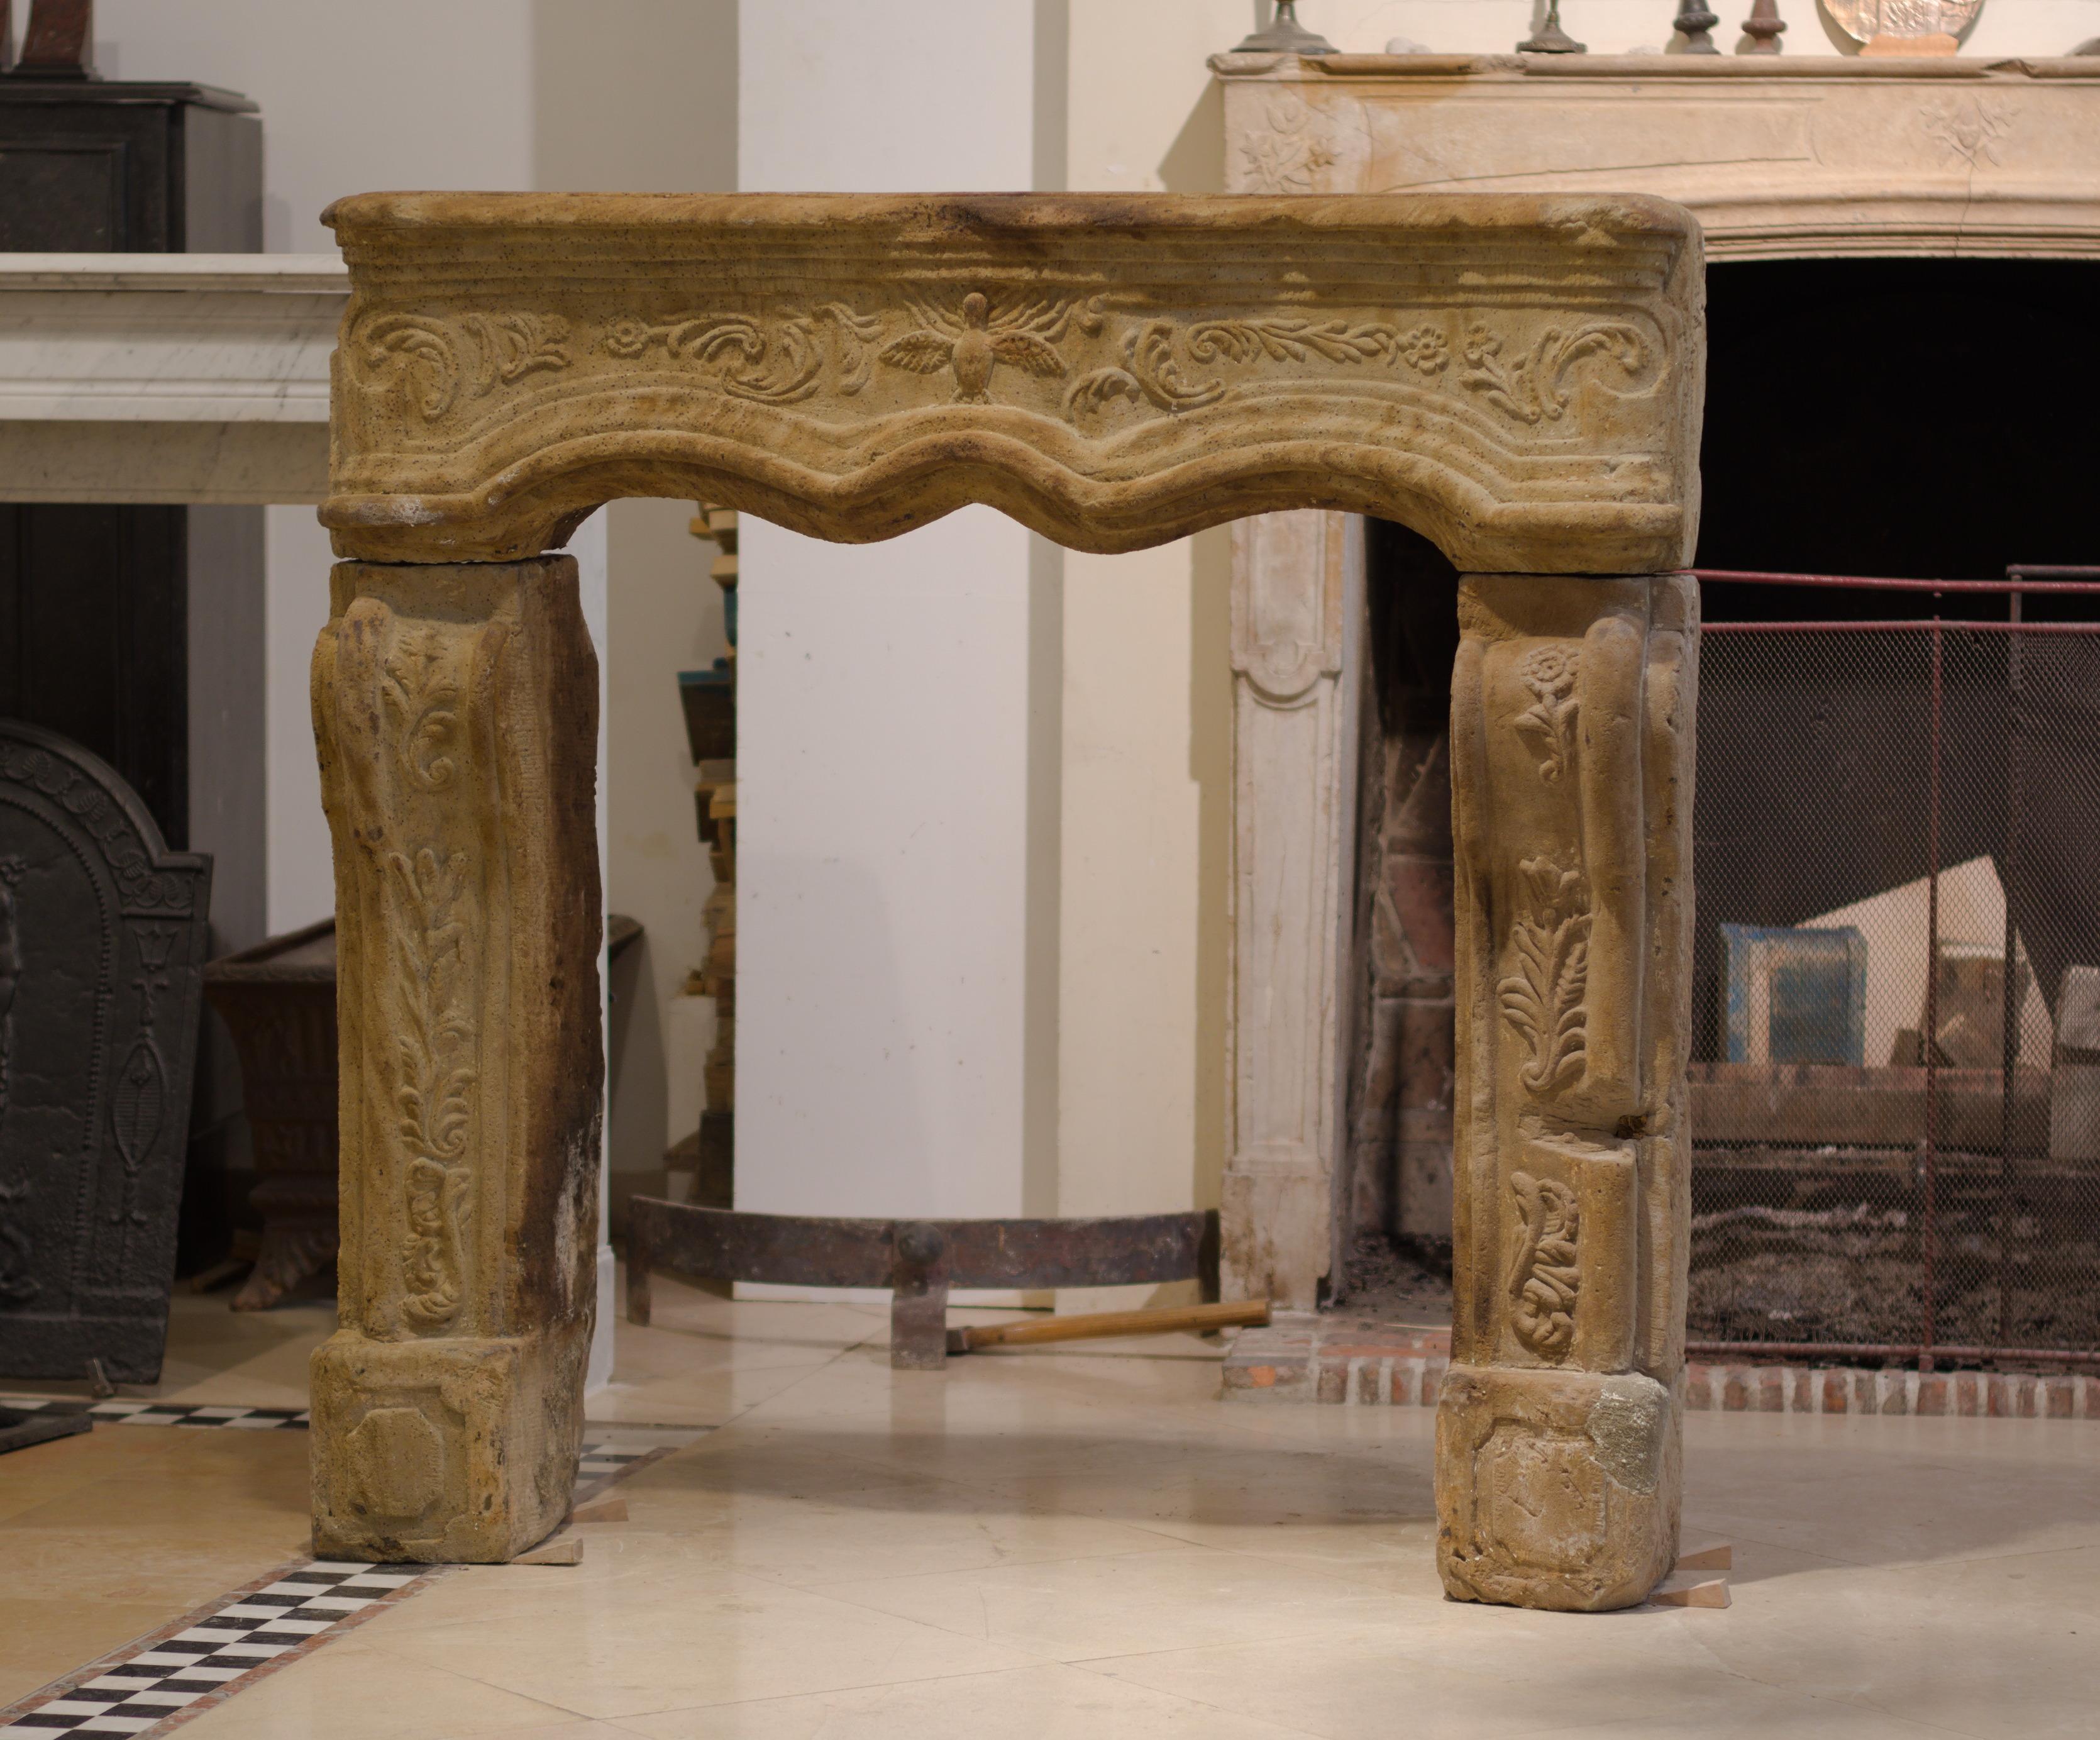 Heureux de présenter cette presque carrée étonnamment détaillée et colorée cheminée française Régence de la fin du 18ème siècle.
Il est clair que cette cheminée a eu une vie difficile, elle a de nombreuses restaurations anciennes et quelques